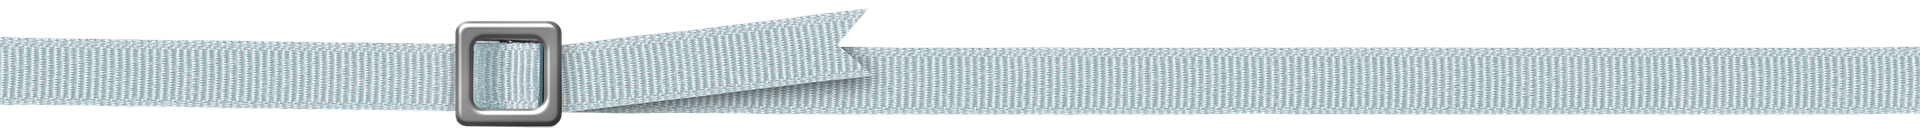 belt-line-separator-light-blue